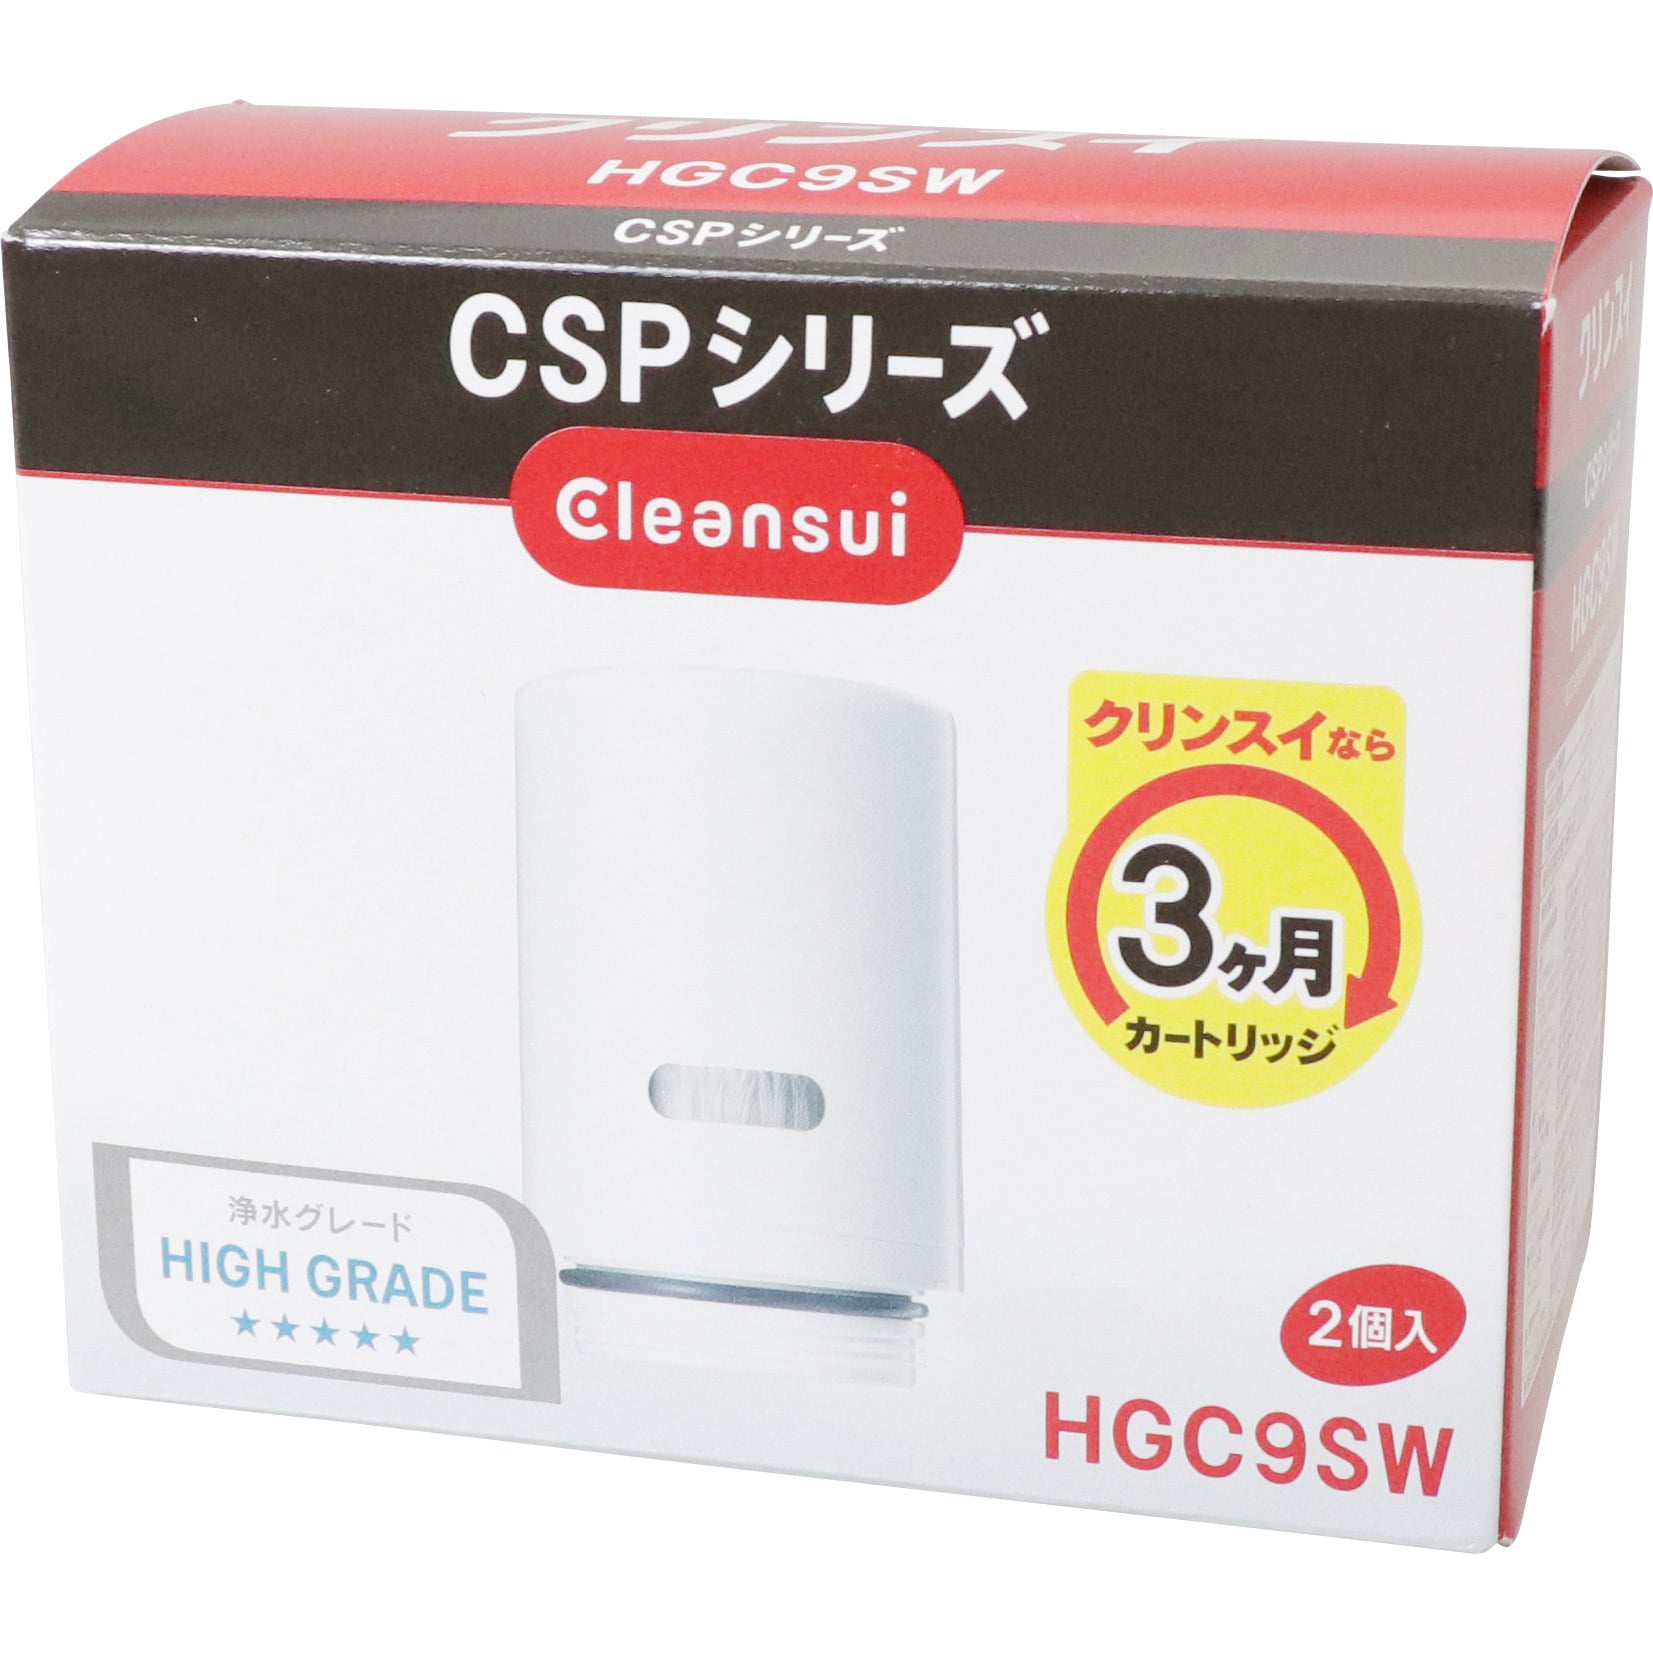 クリンスイ カートリッジ CSPシリーズ HGC9SW 2個入り×2箱